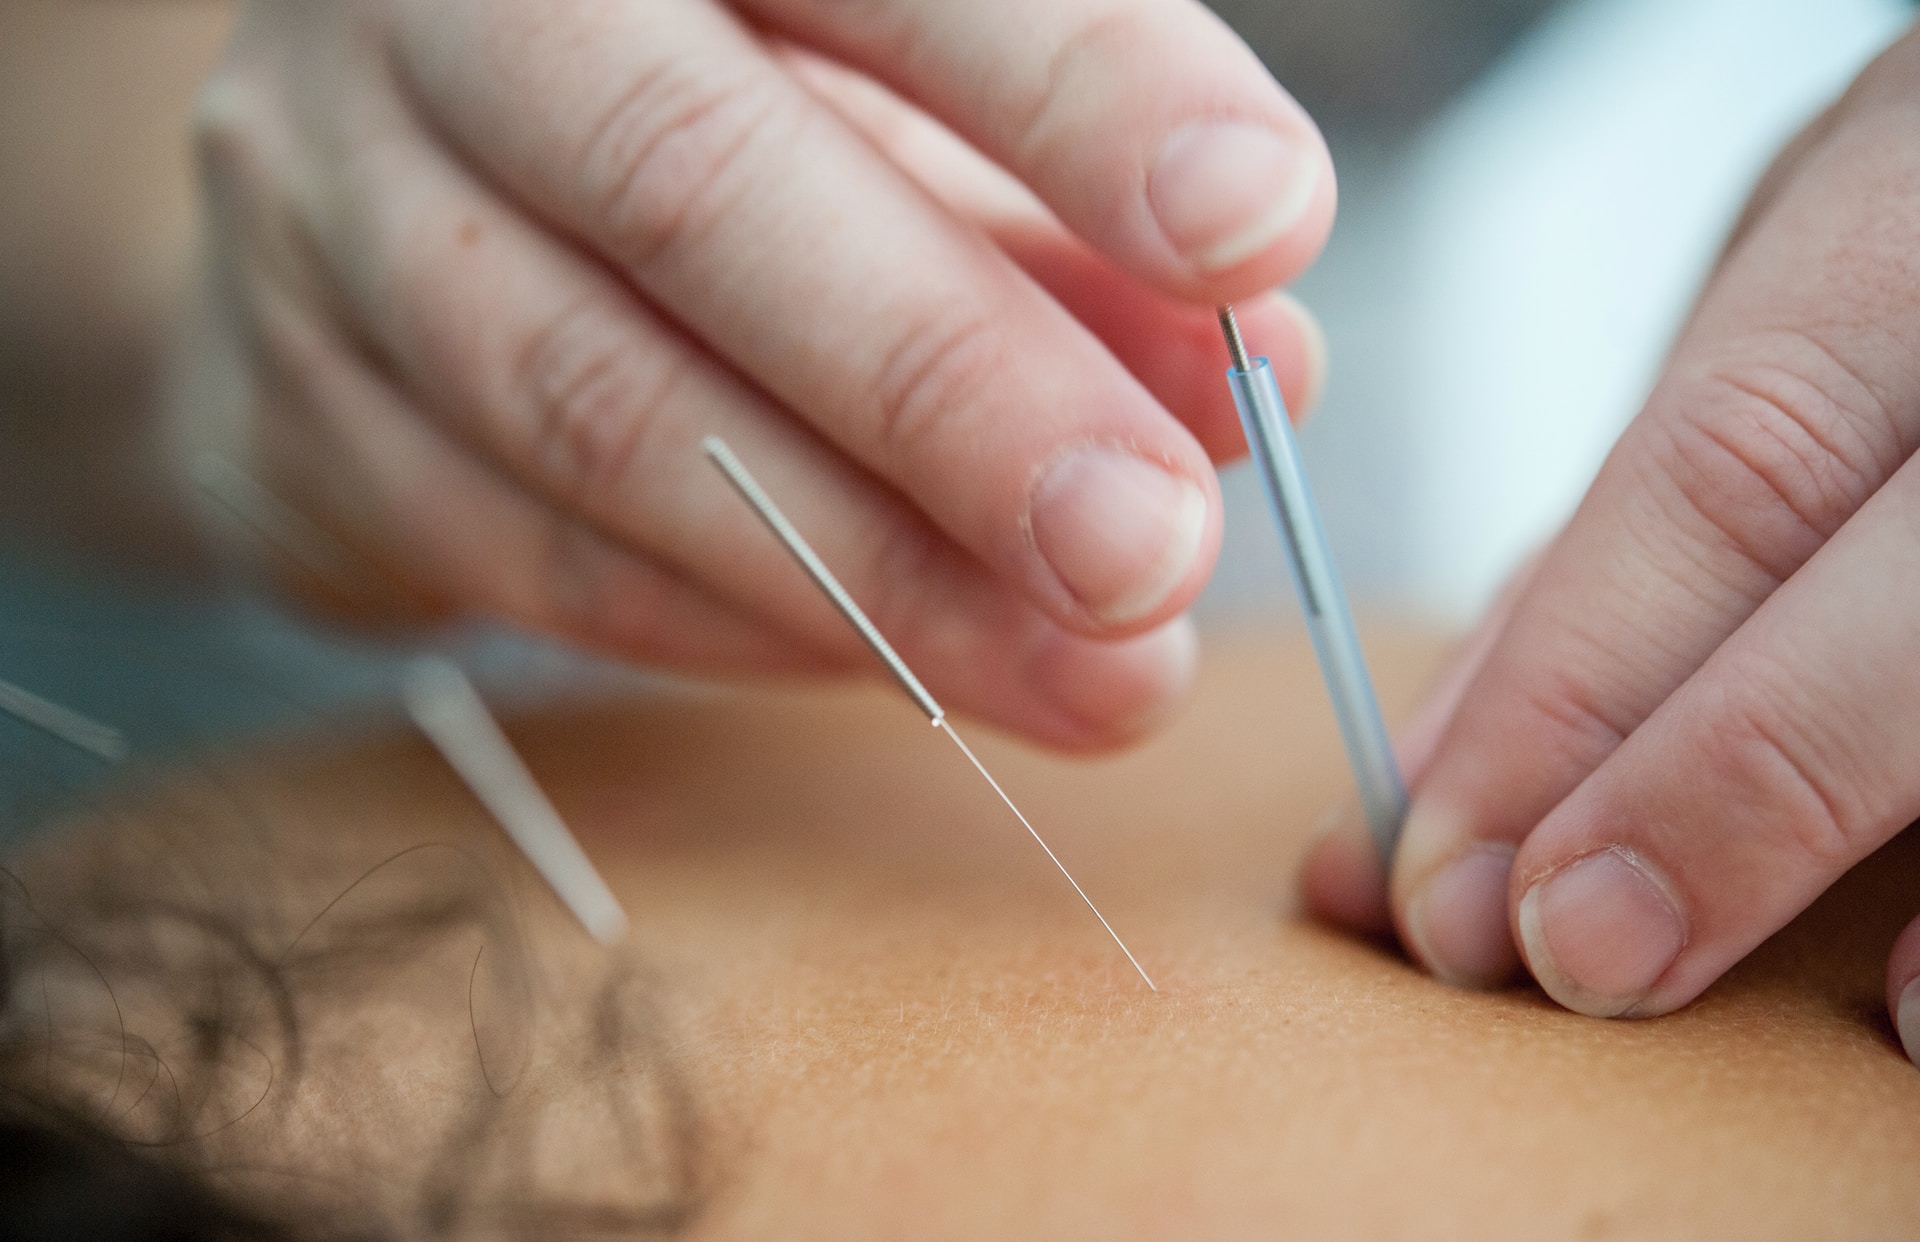 Mains qui placent des aiguilles d'acupuncture sur le dos d'une personne